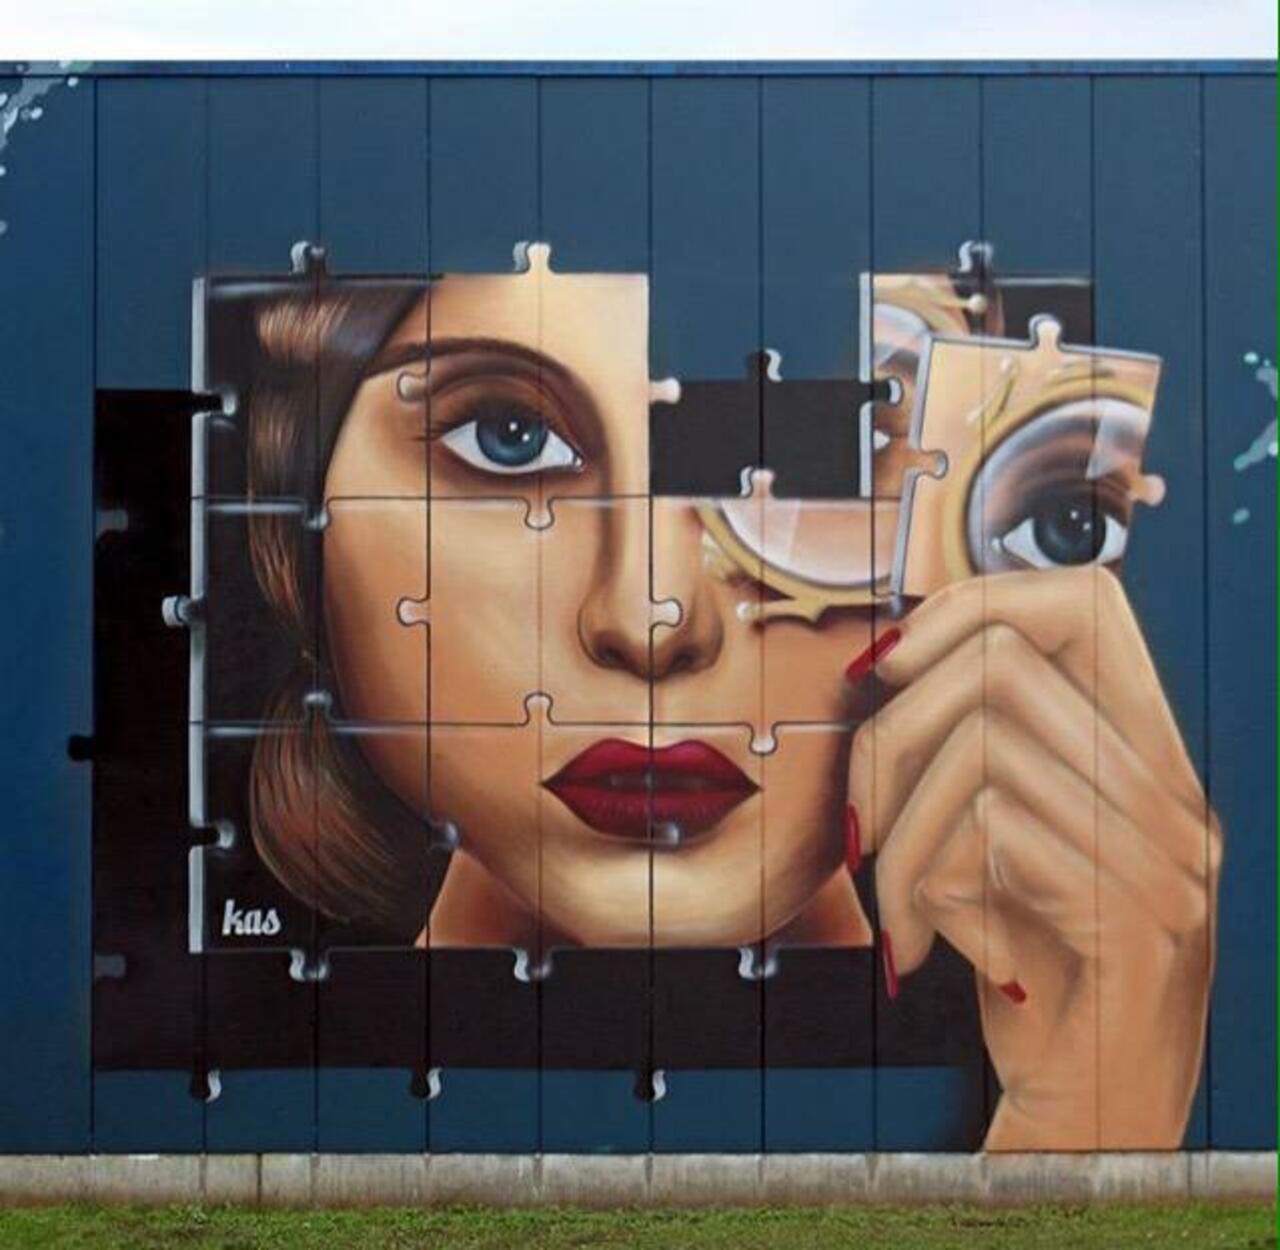 Kas Art's new Street Art "Piece of me" in Aalst Belgium 

#art #graffiti #mural #streetart http://t.co/hiwRvMRHbl